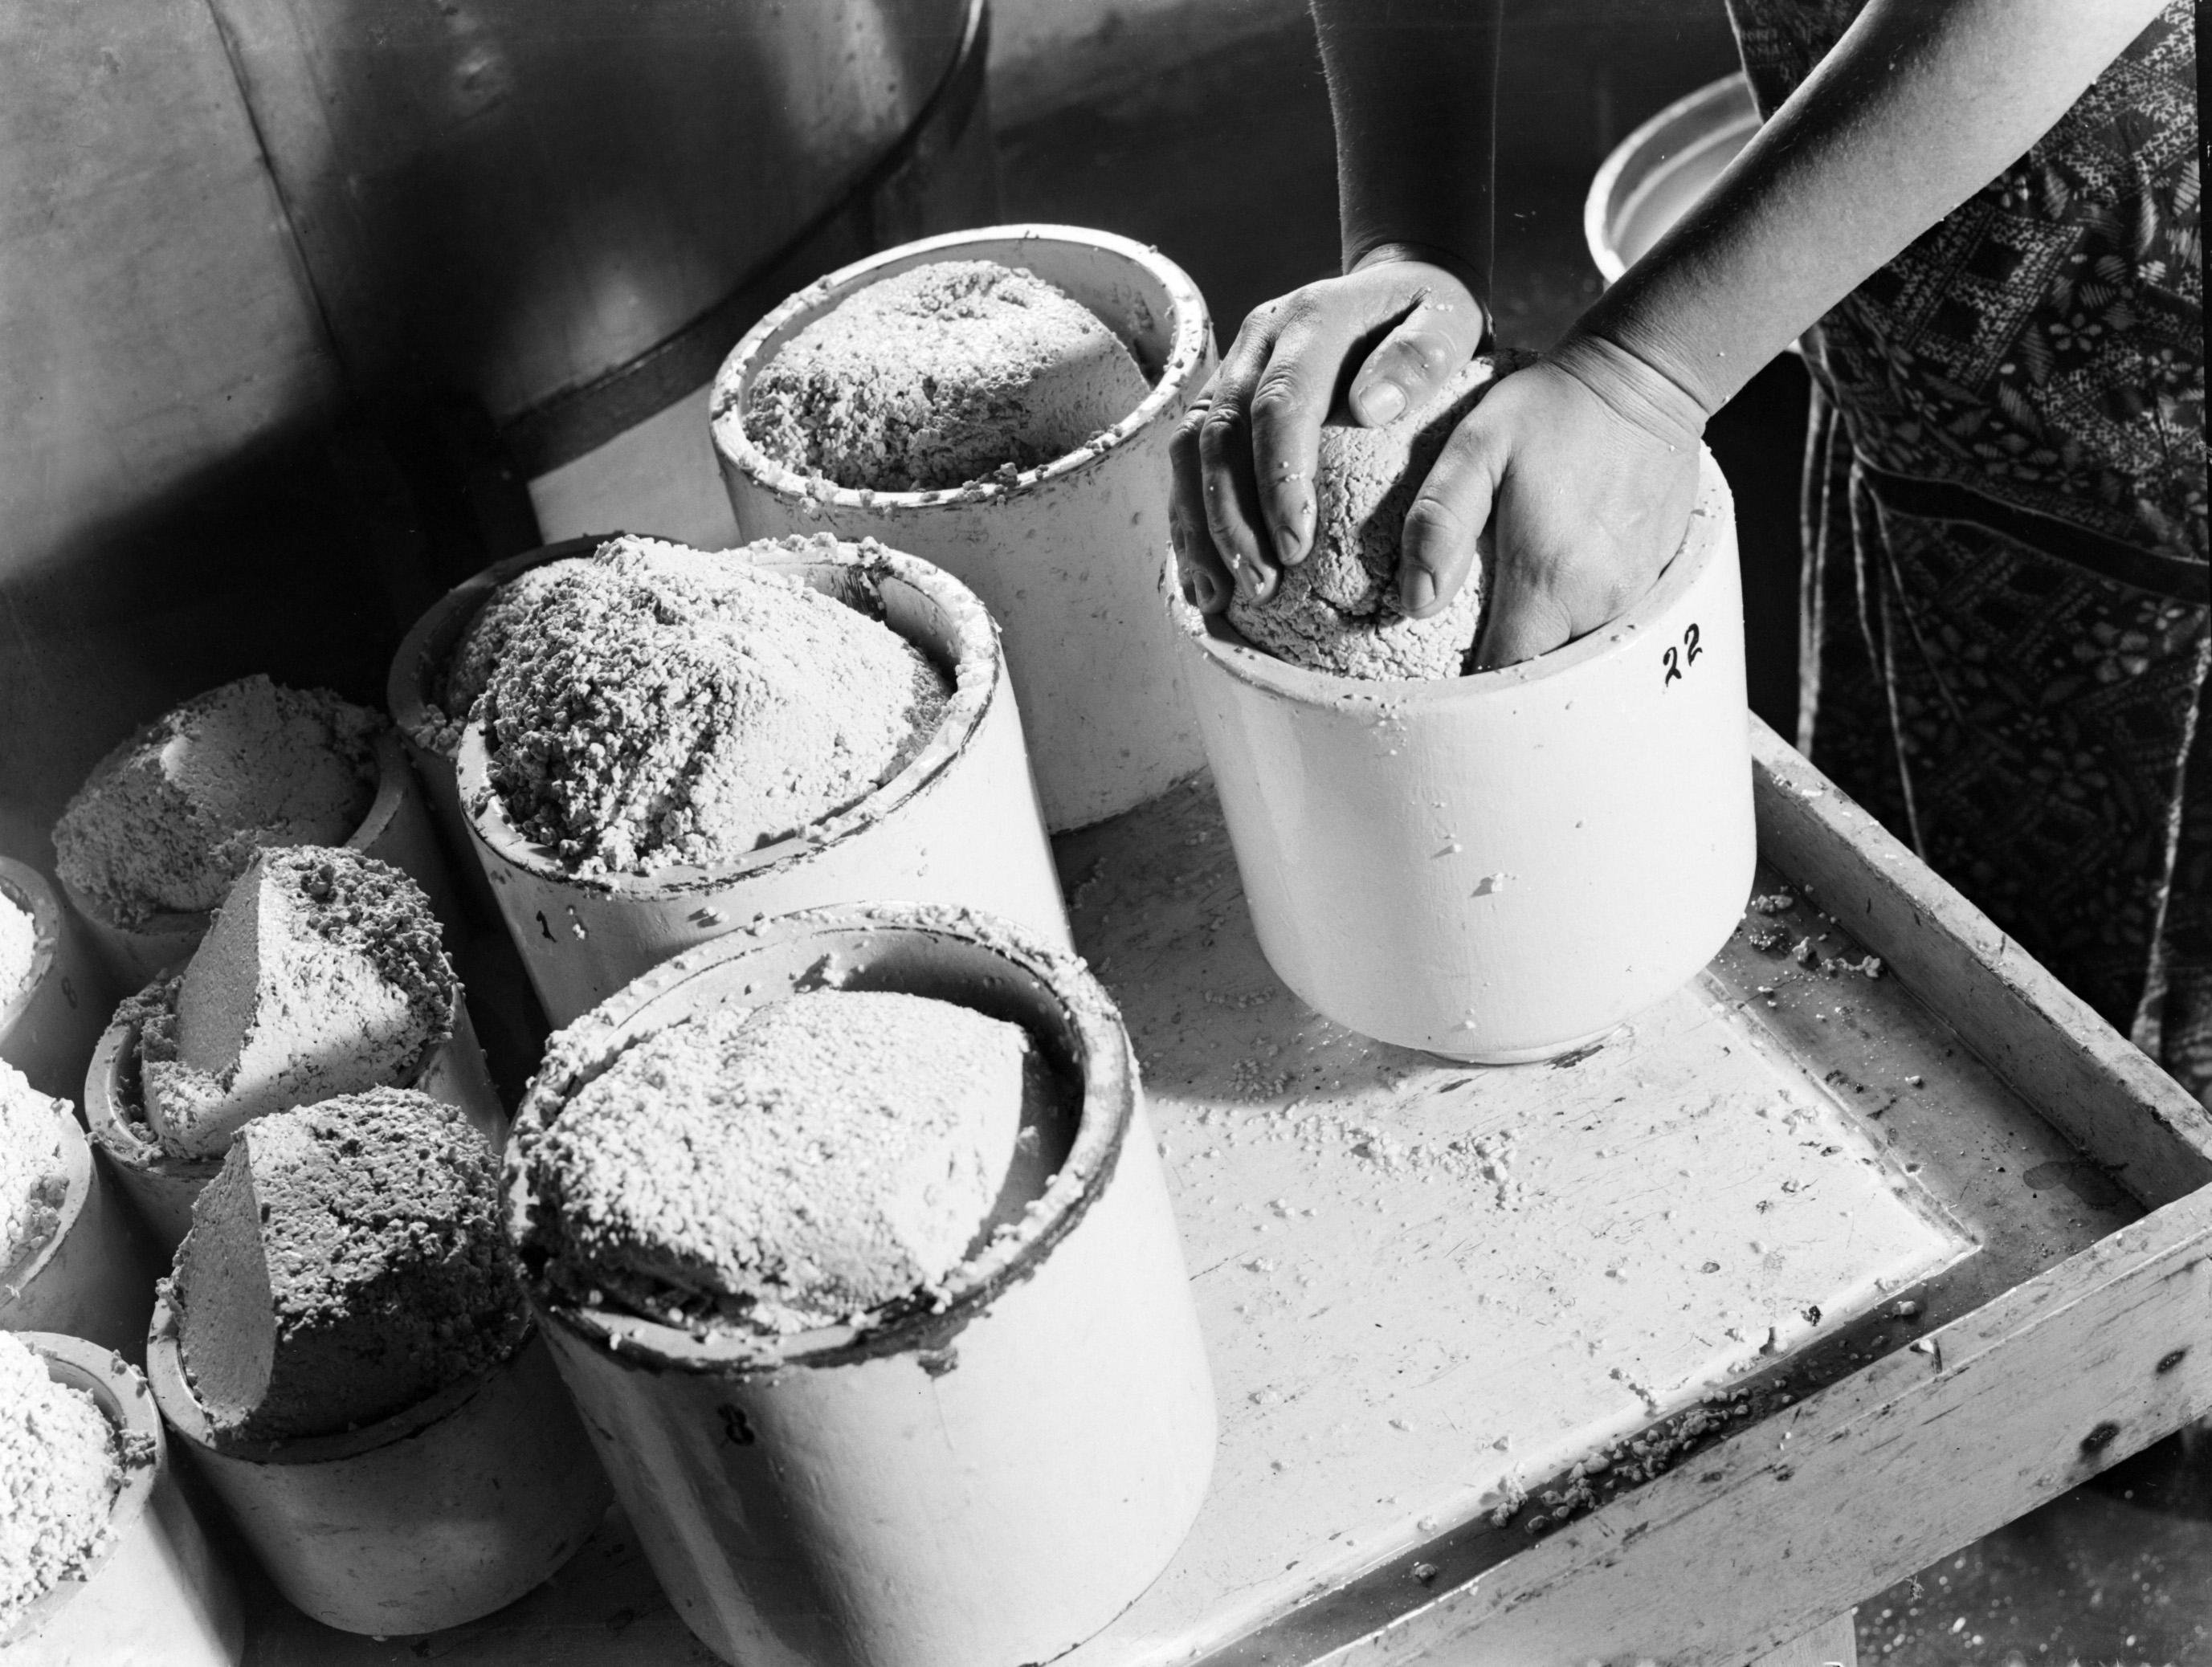 Onderscheppen dynastie Inleg File:Kaasbereiding op een boerderij in Broek in Waterland, Bestanddeelnr  189-0349.jpg - Wikimedia Commons